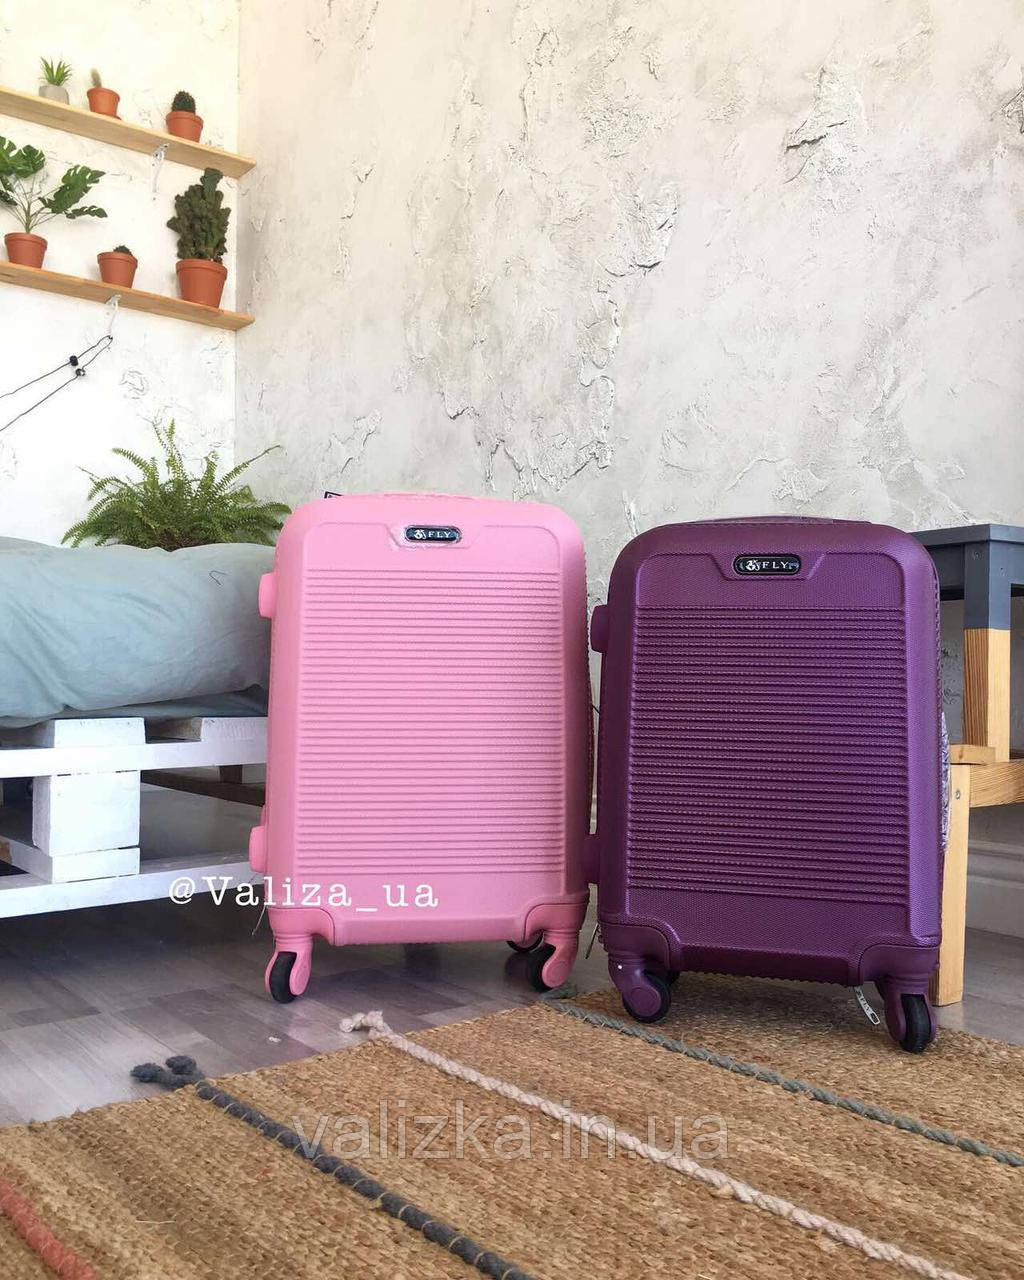 Великий пластиковий чемодан на 4-х колесах якісний валізу рожевий / Велика пластикова валіза